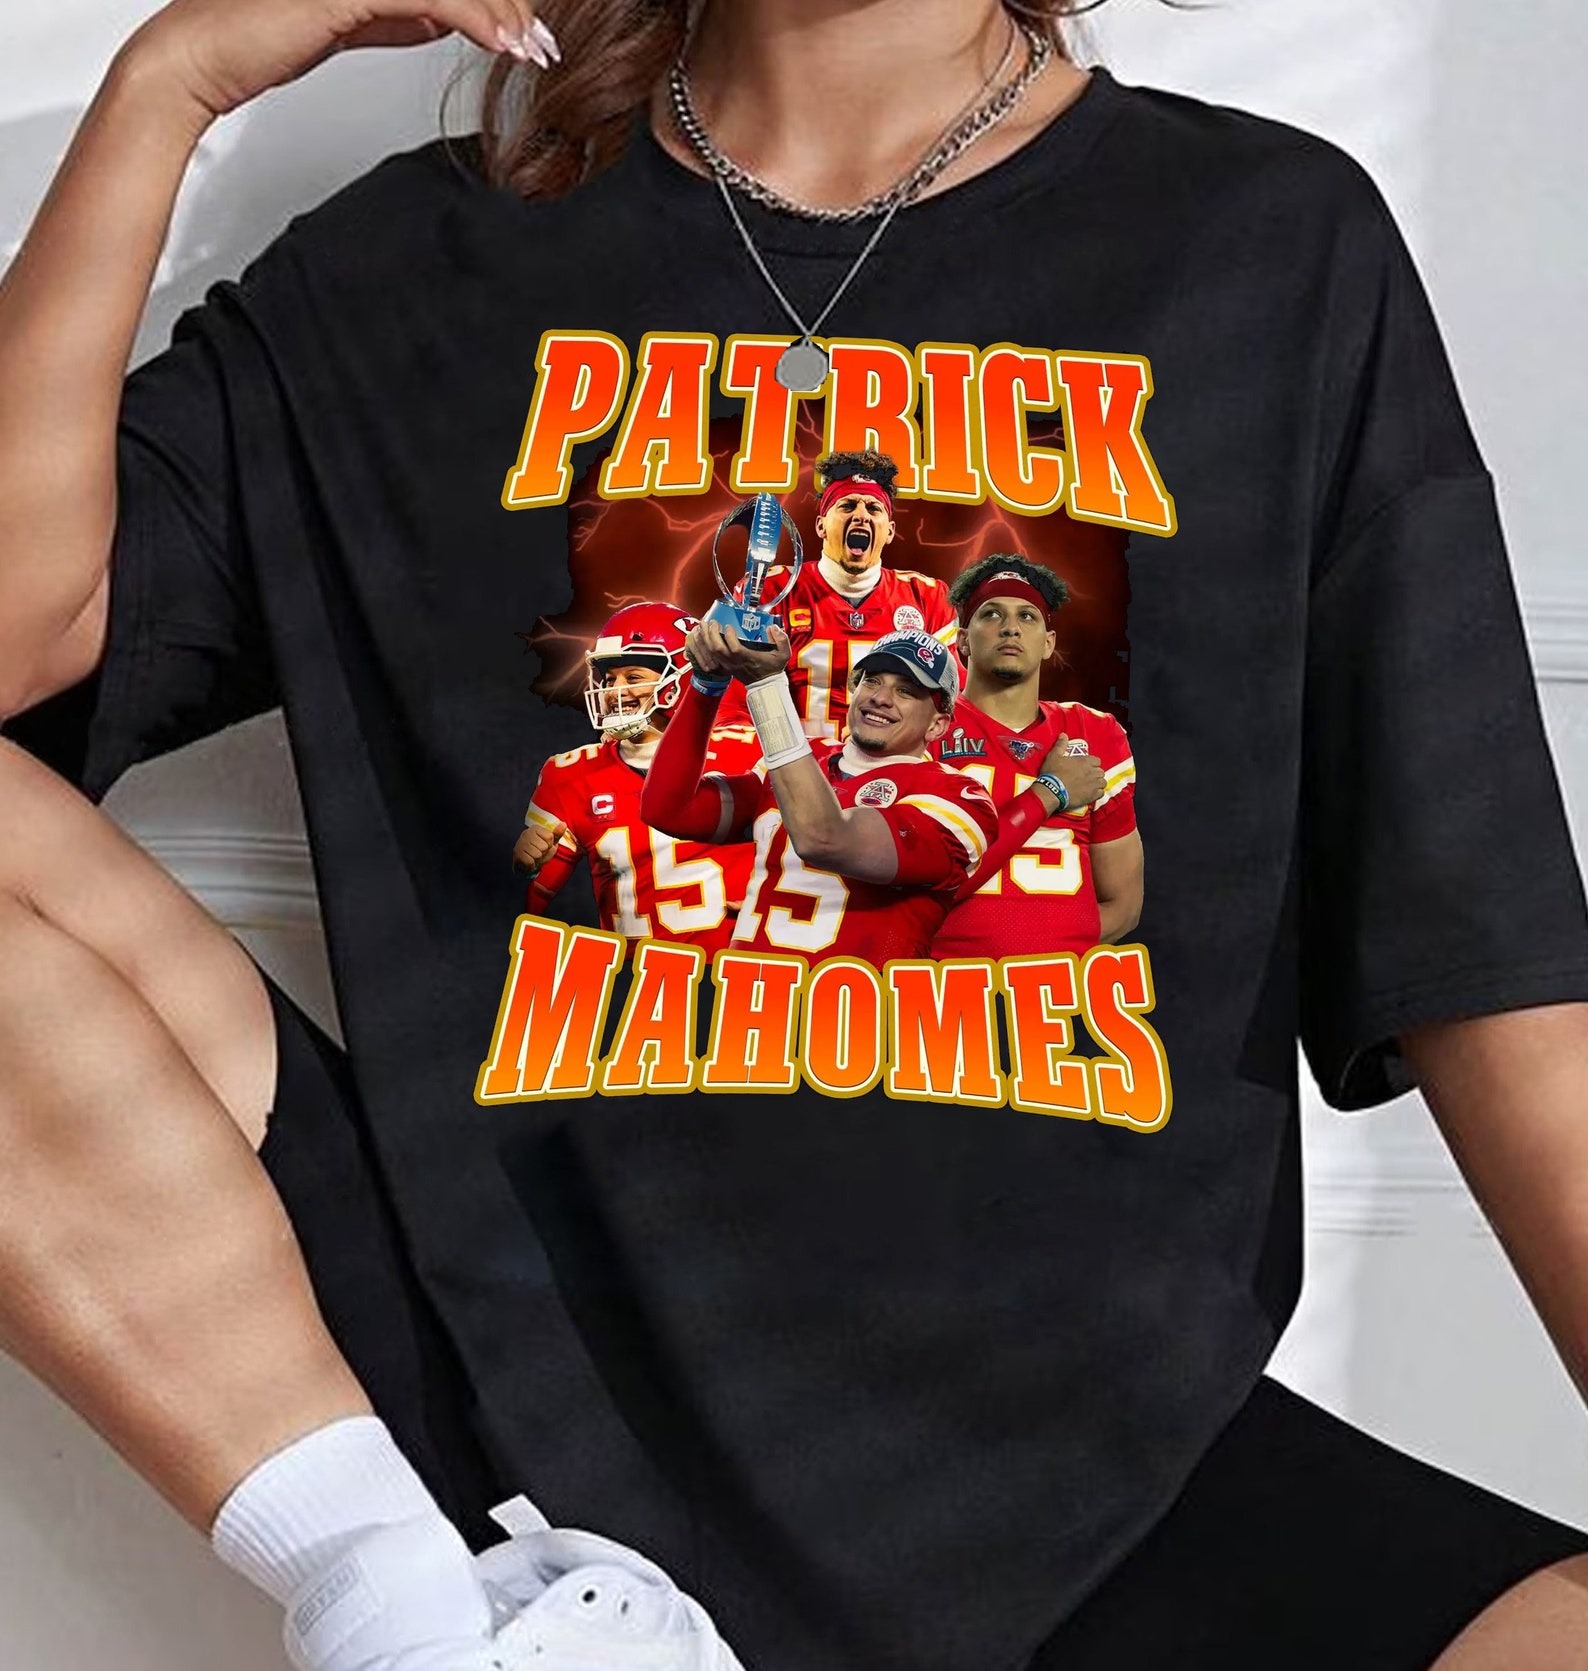 patrick mahomes shirt